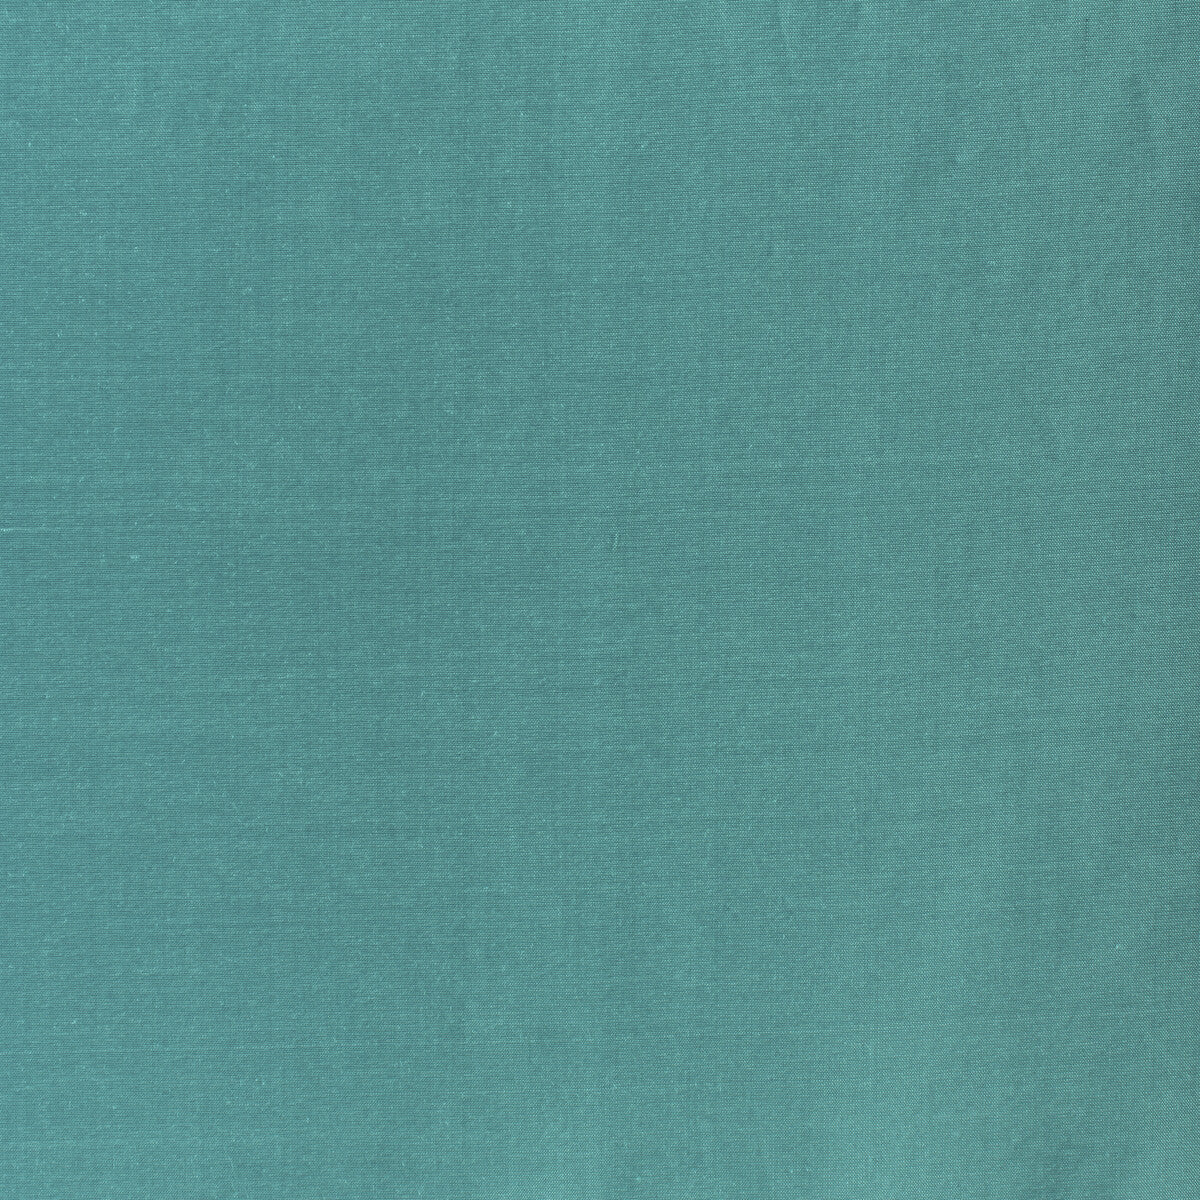 Kravet Design fabric in 4070-1315 color - pattern 4070.1315.0 - by Kravet Design